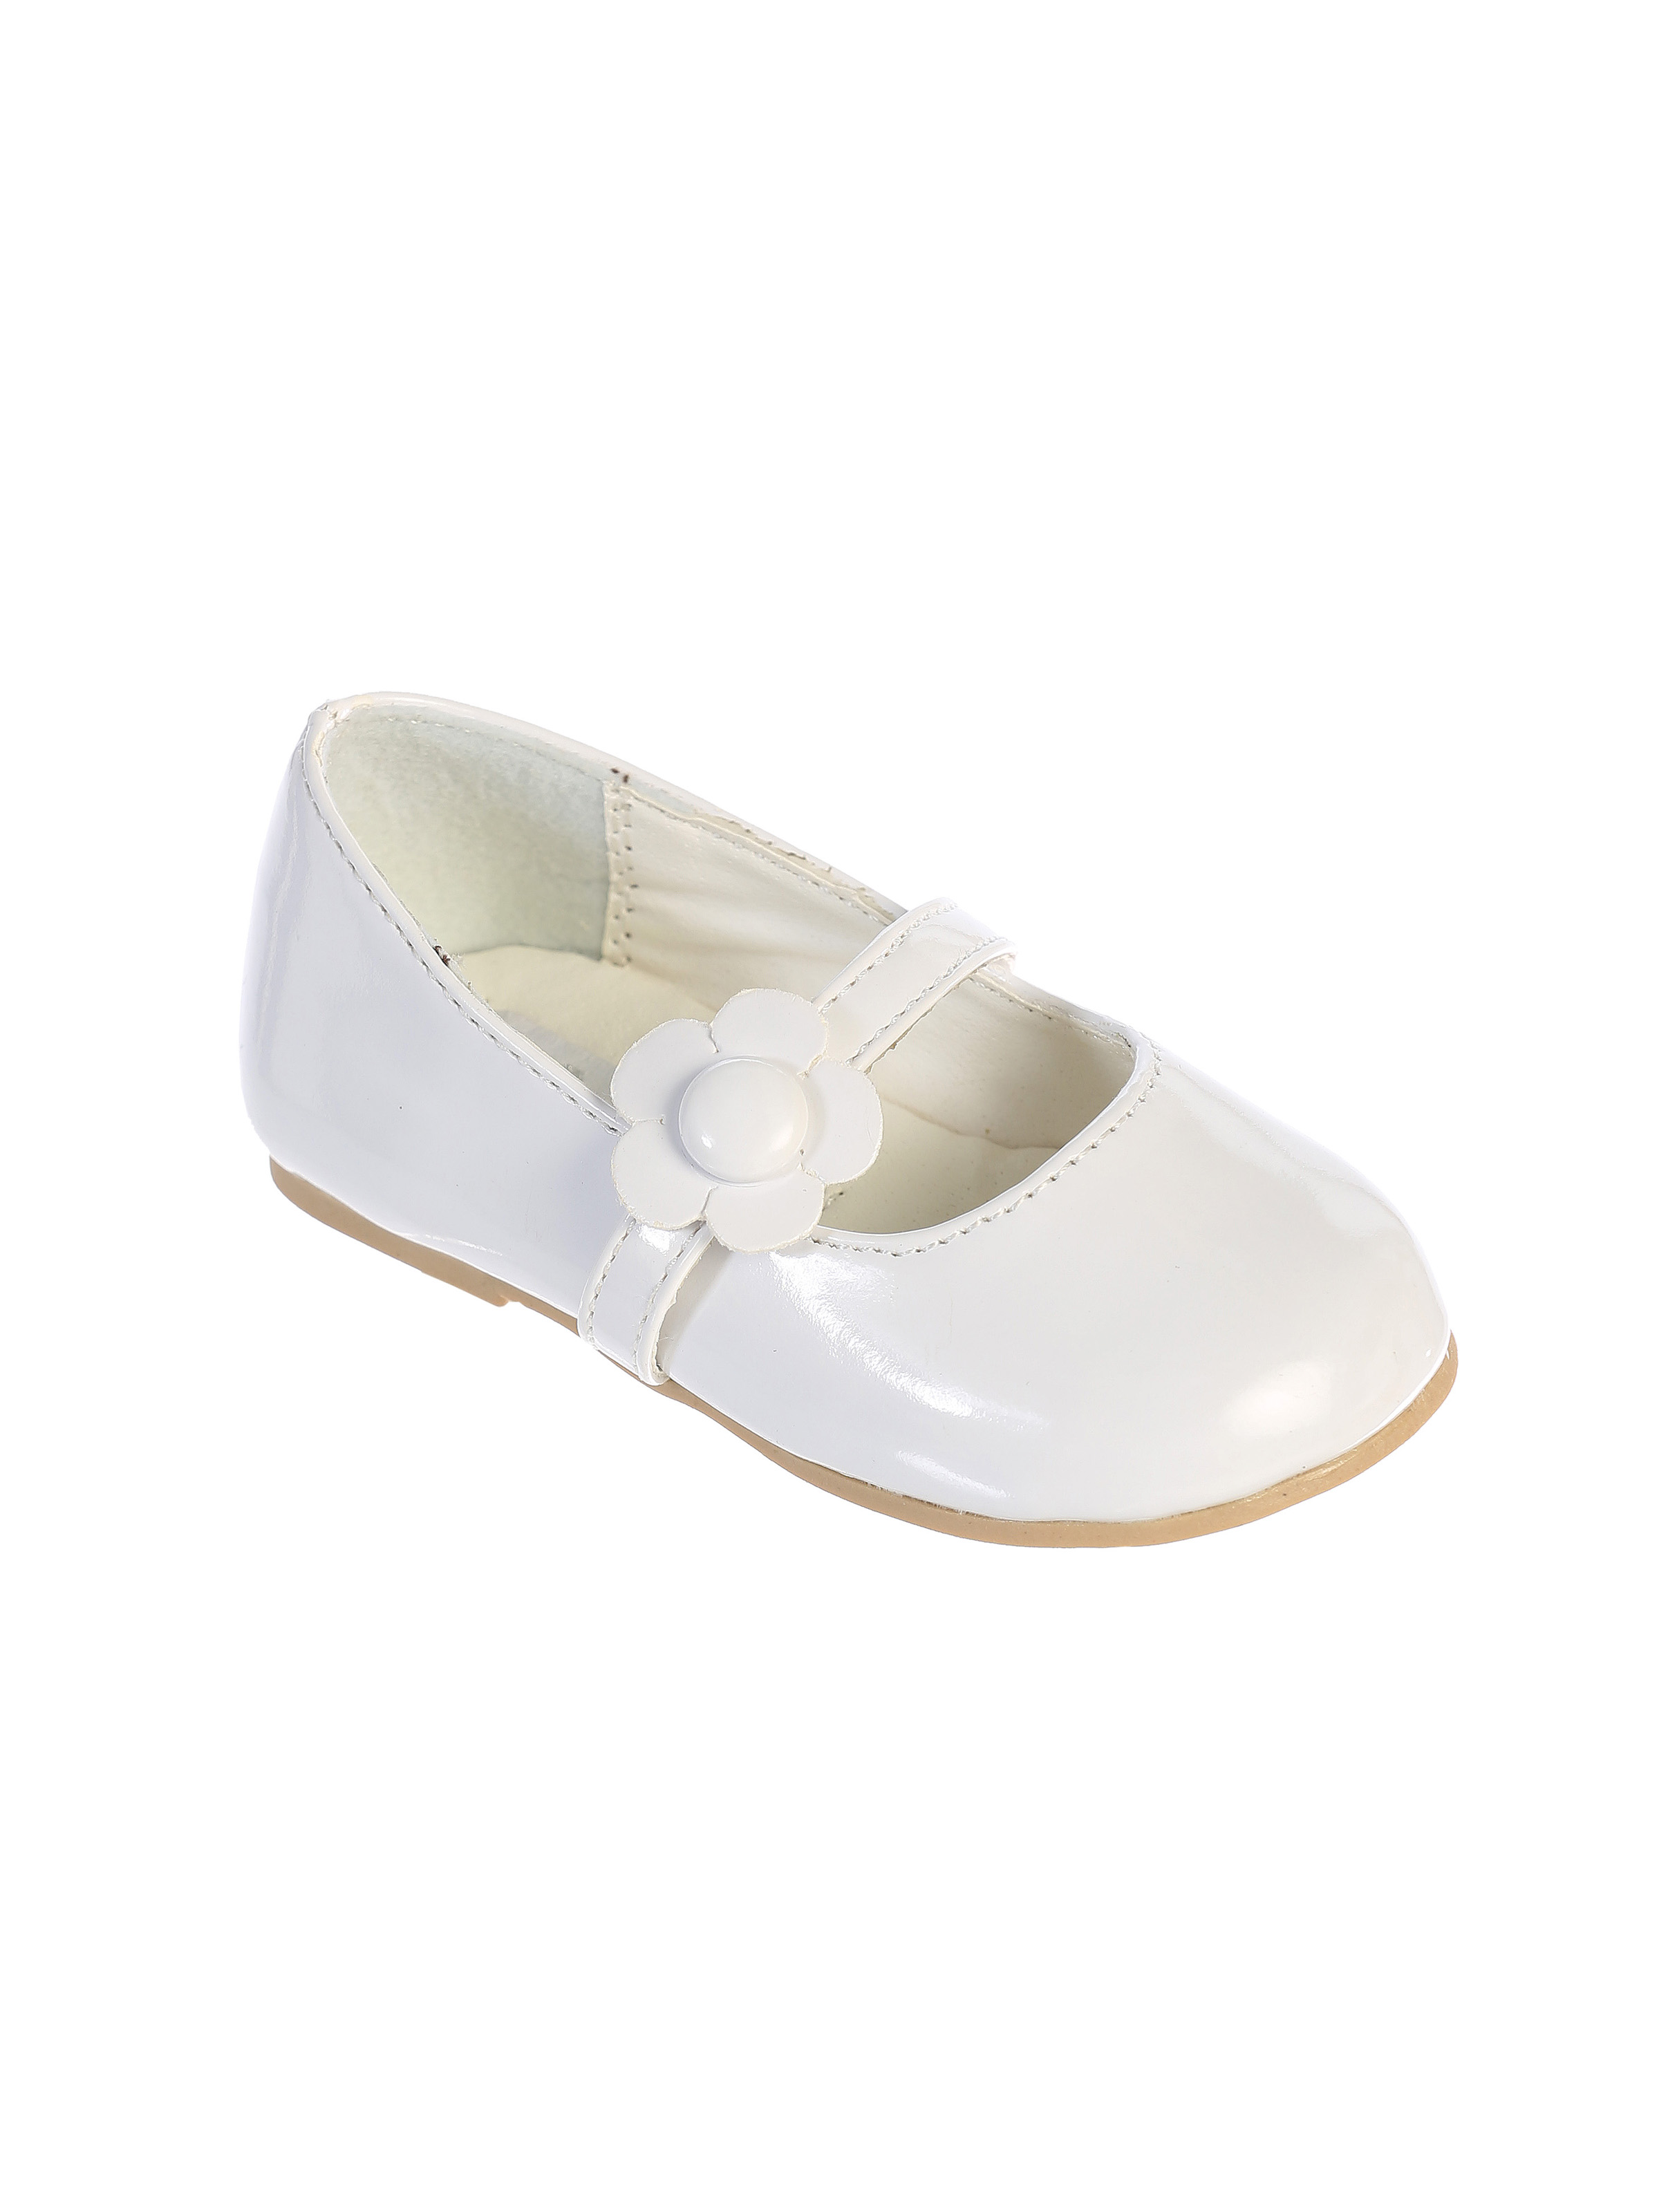 white shoes flower girl